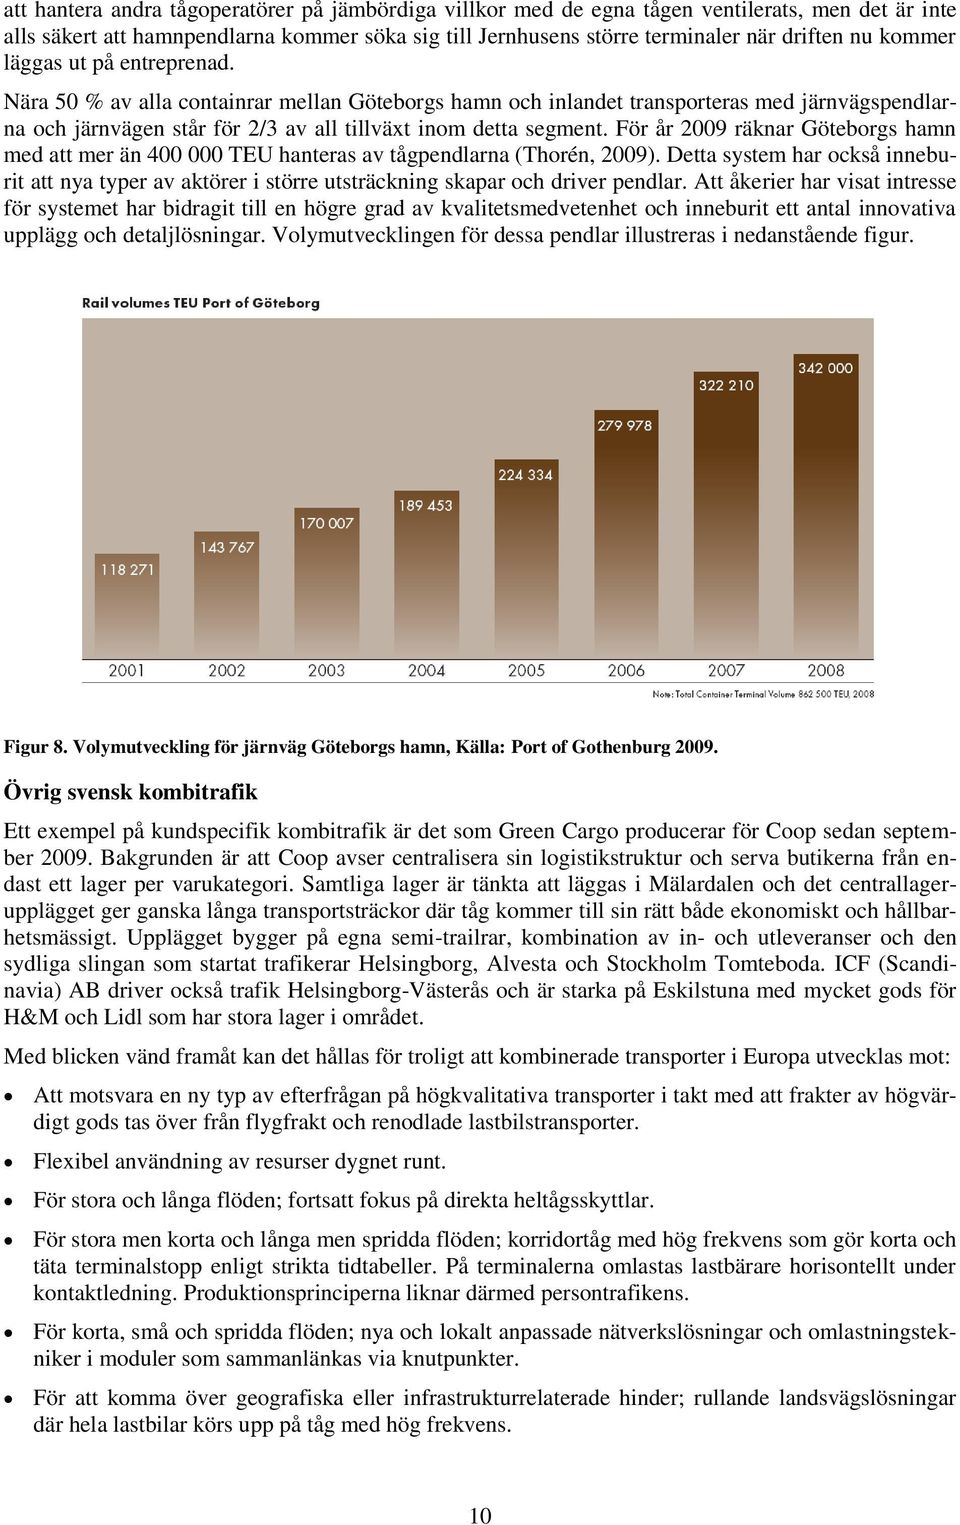 För år 2009 räknar Göteborgs hamn med att mer än 400 000 TEU hanteras av tågpendlarna (Thorén, 2009).